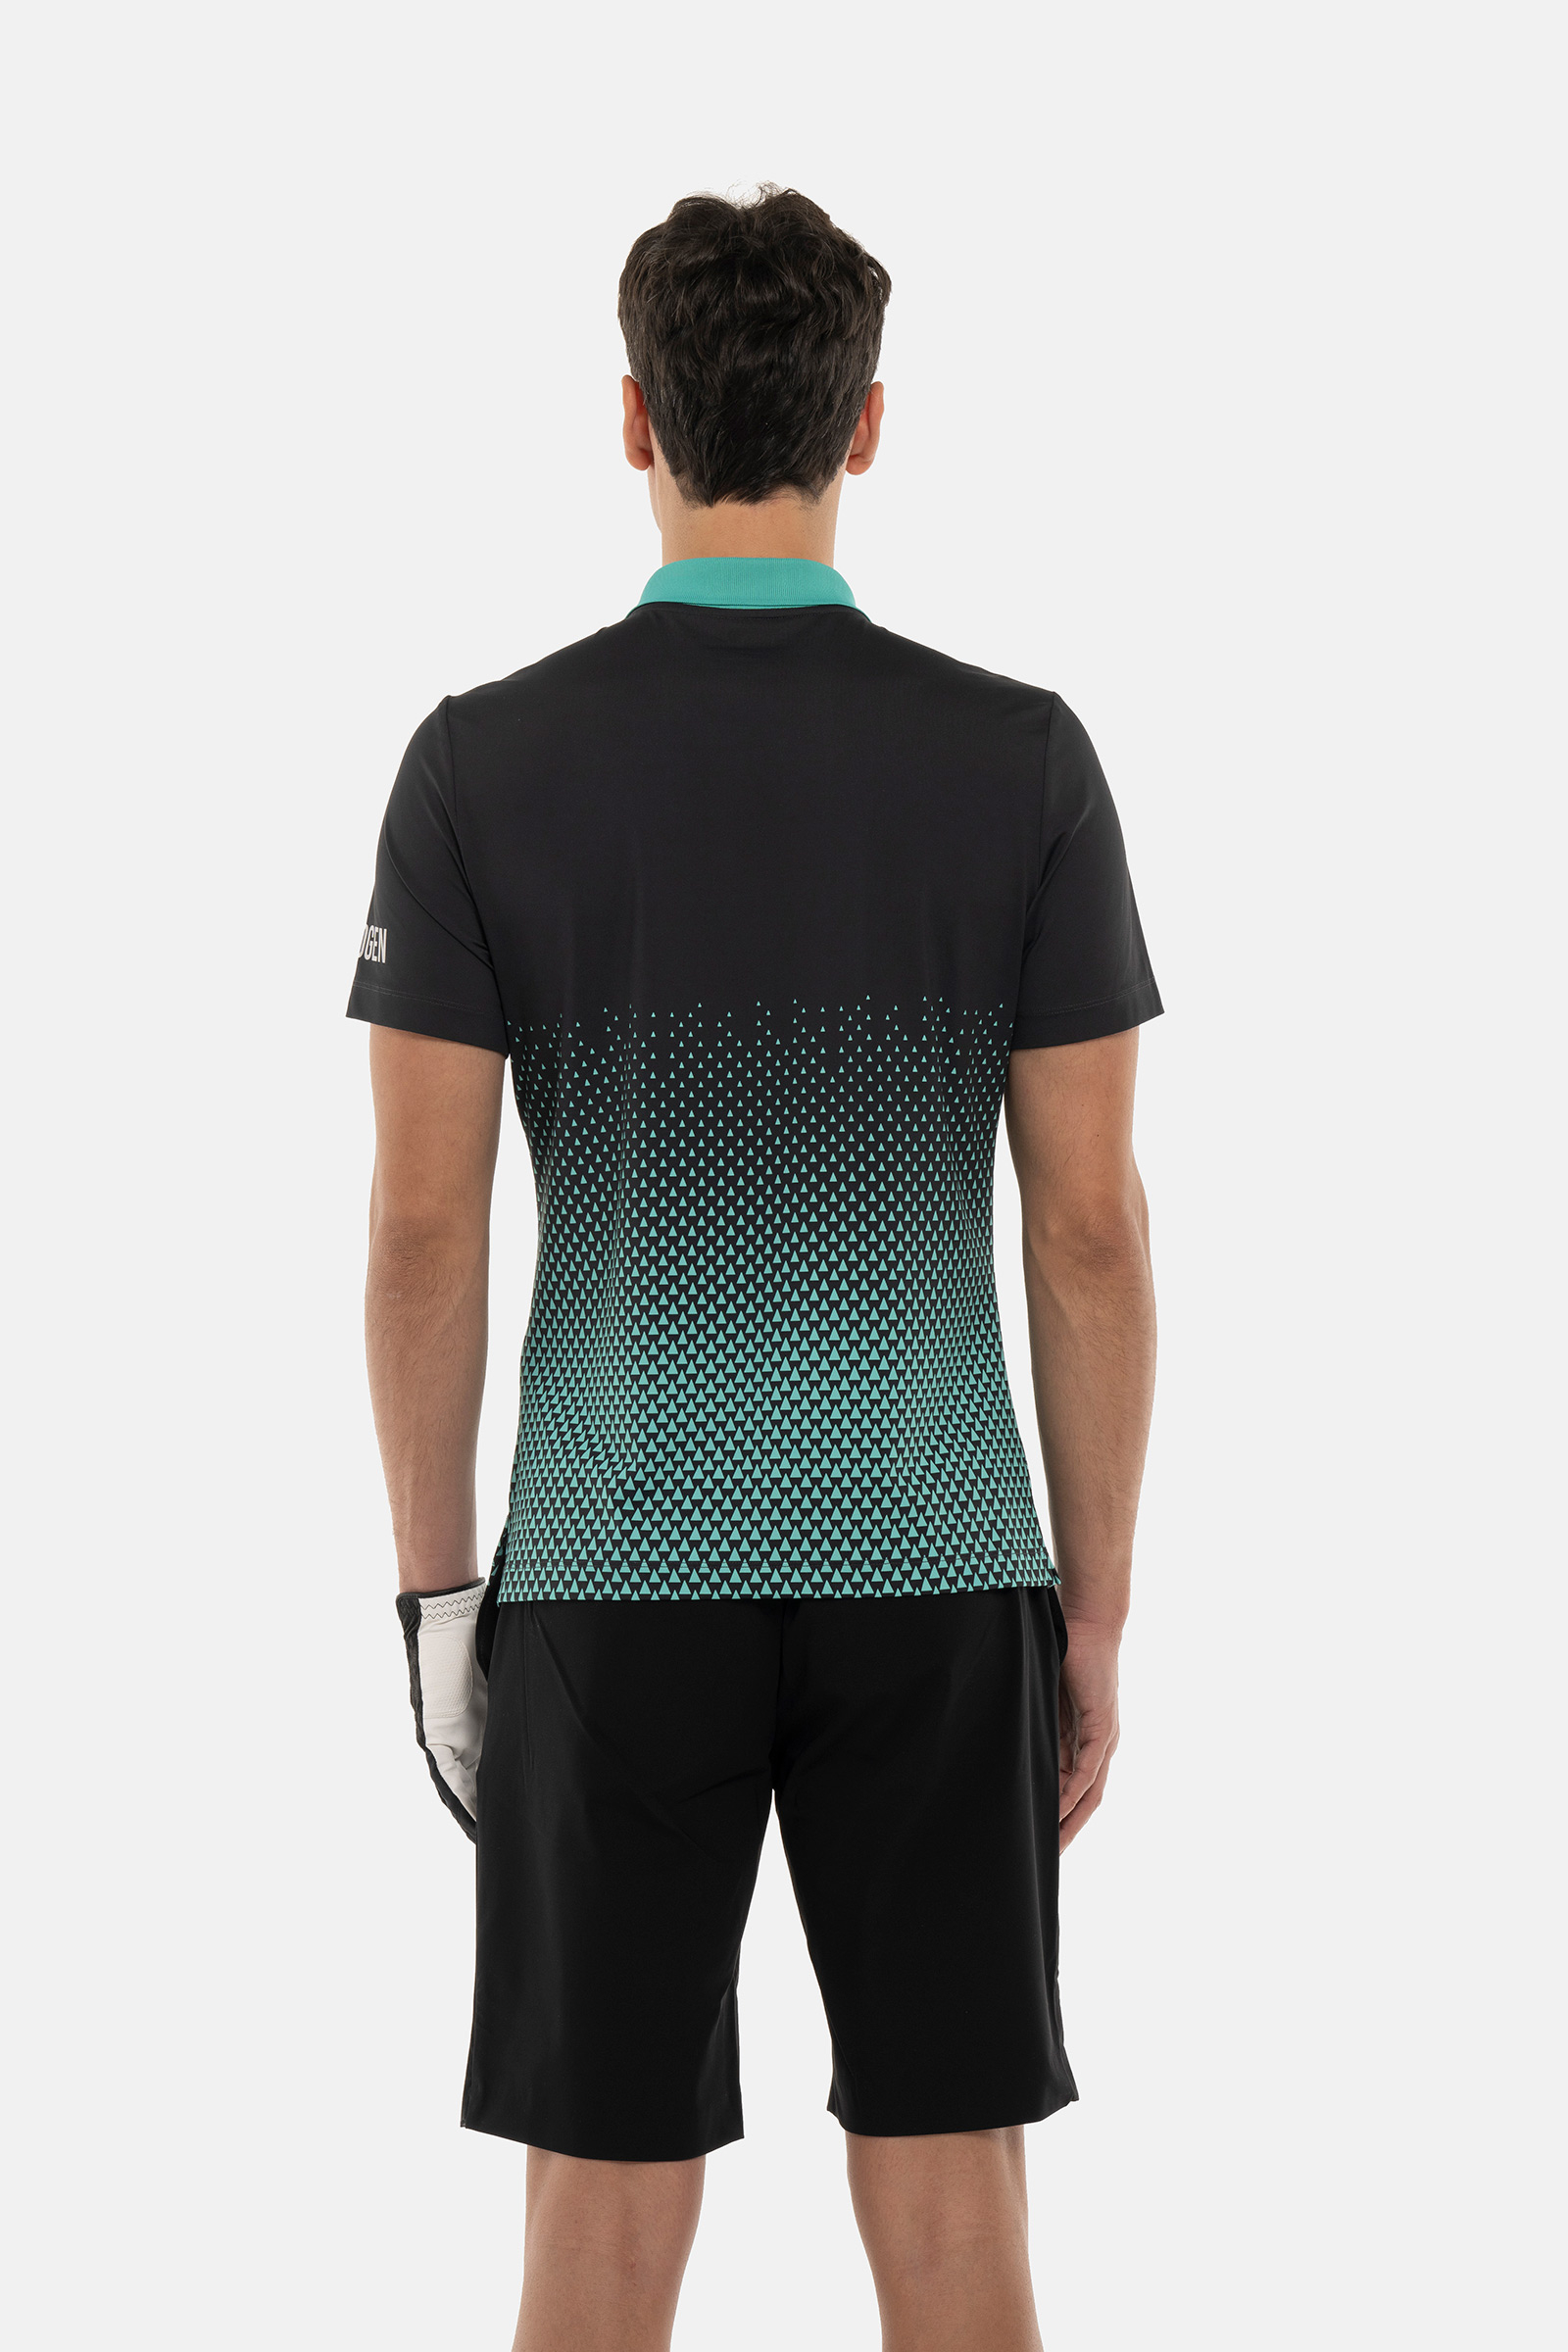 GEOMETRIC DEGRADE’ TECH POLO - BLACK,GREEN - Hydrogen - Luxury Sportwear